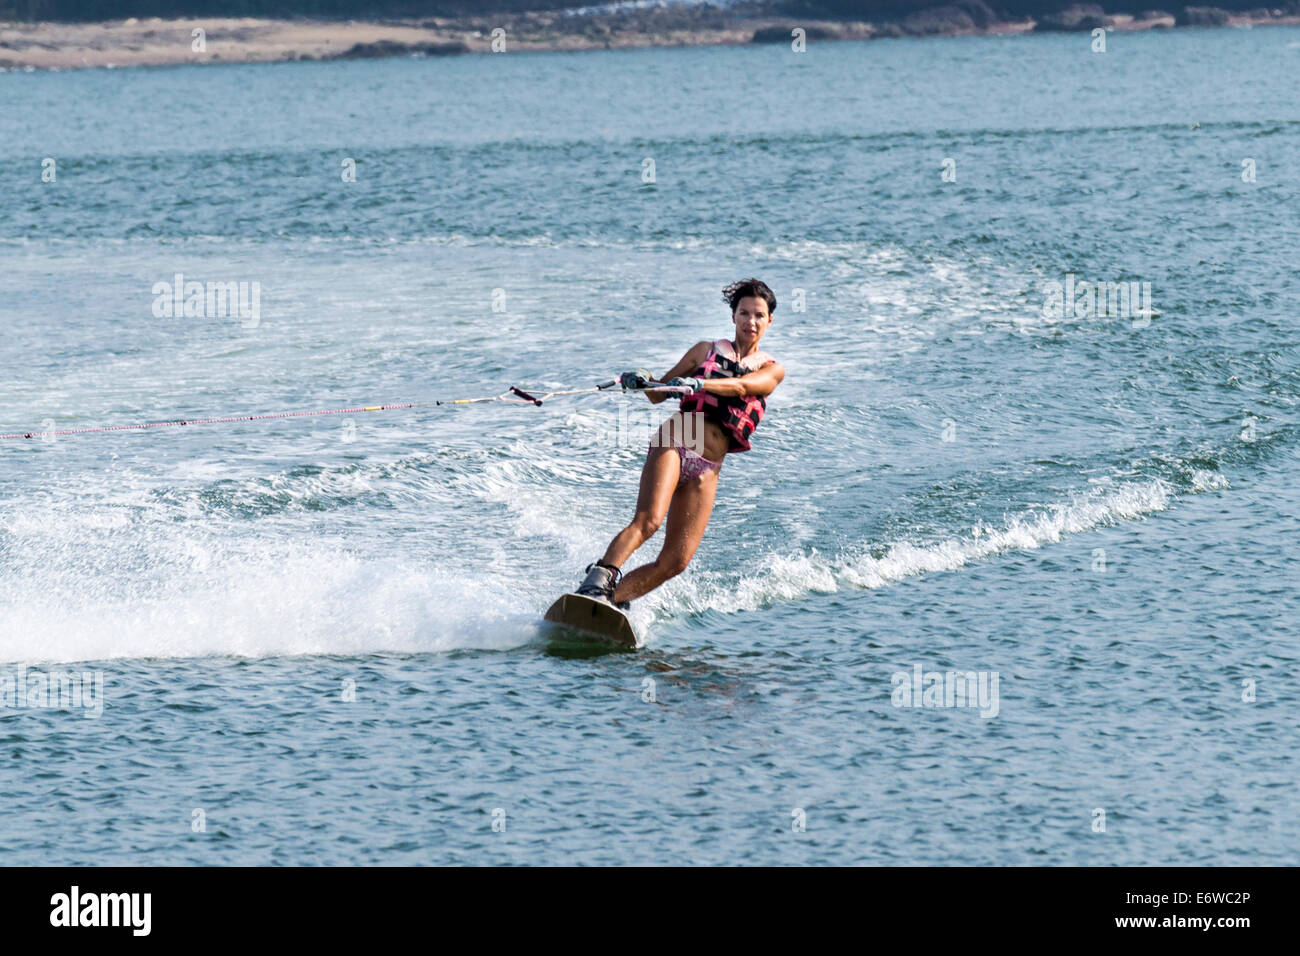 Water ski-ing in Morjim, Goa. Stock Photo